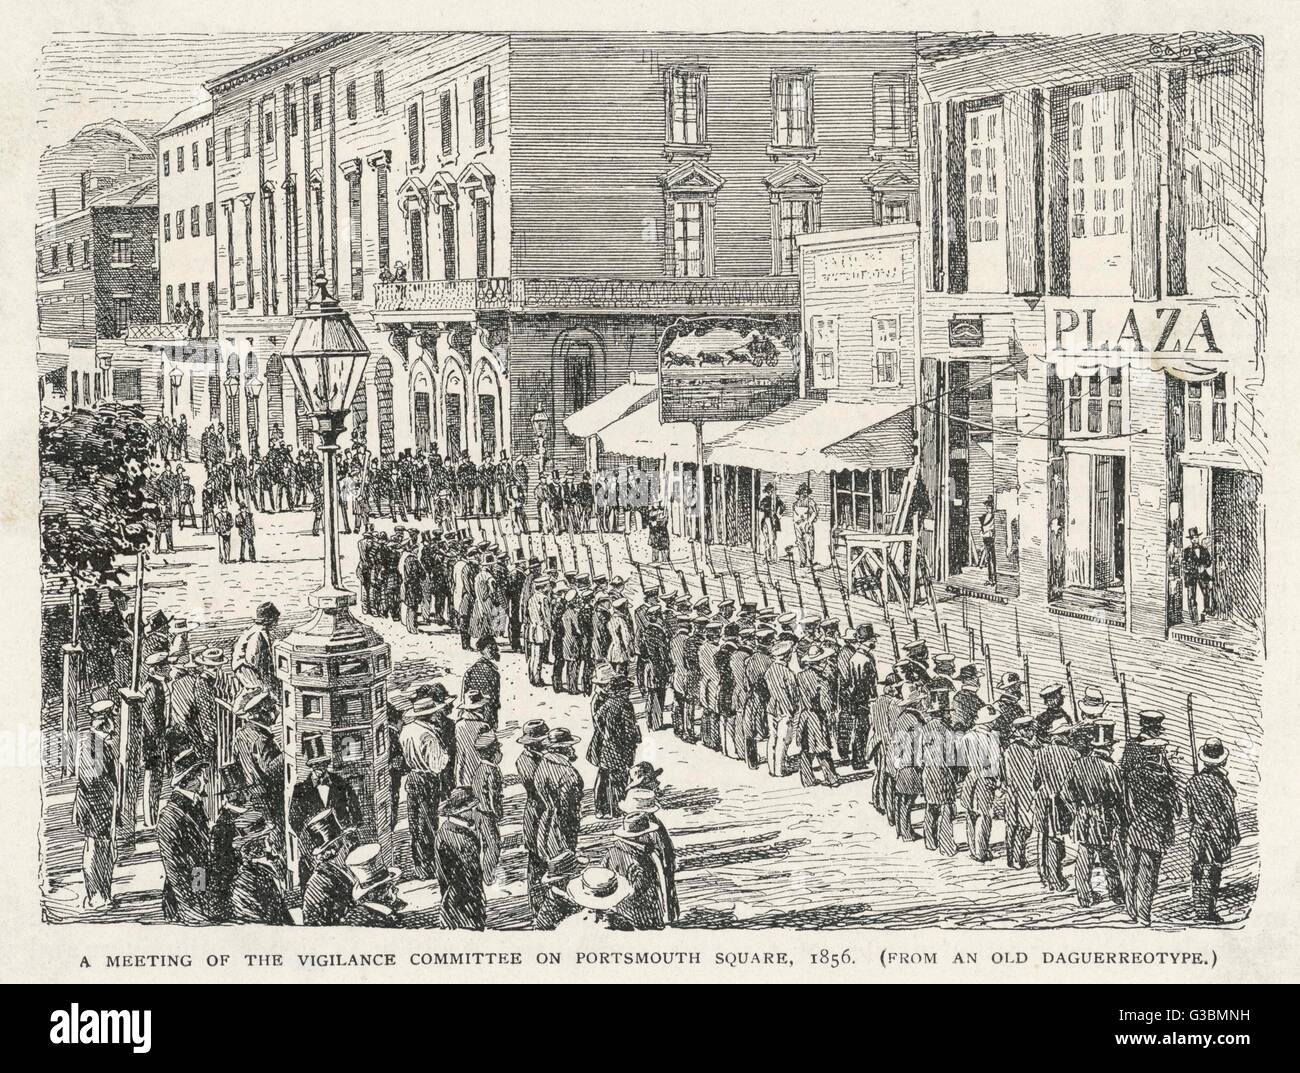 Eine Tagung des Ausschusses Wachsamkeit auf Portsmouth Square, 1856 Datum: 1856 Stockfoto